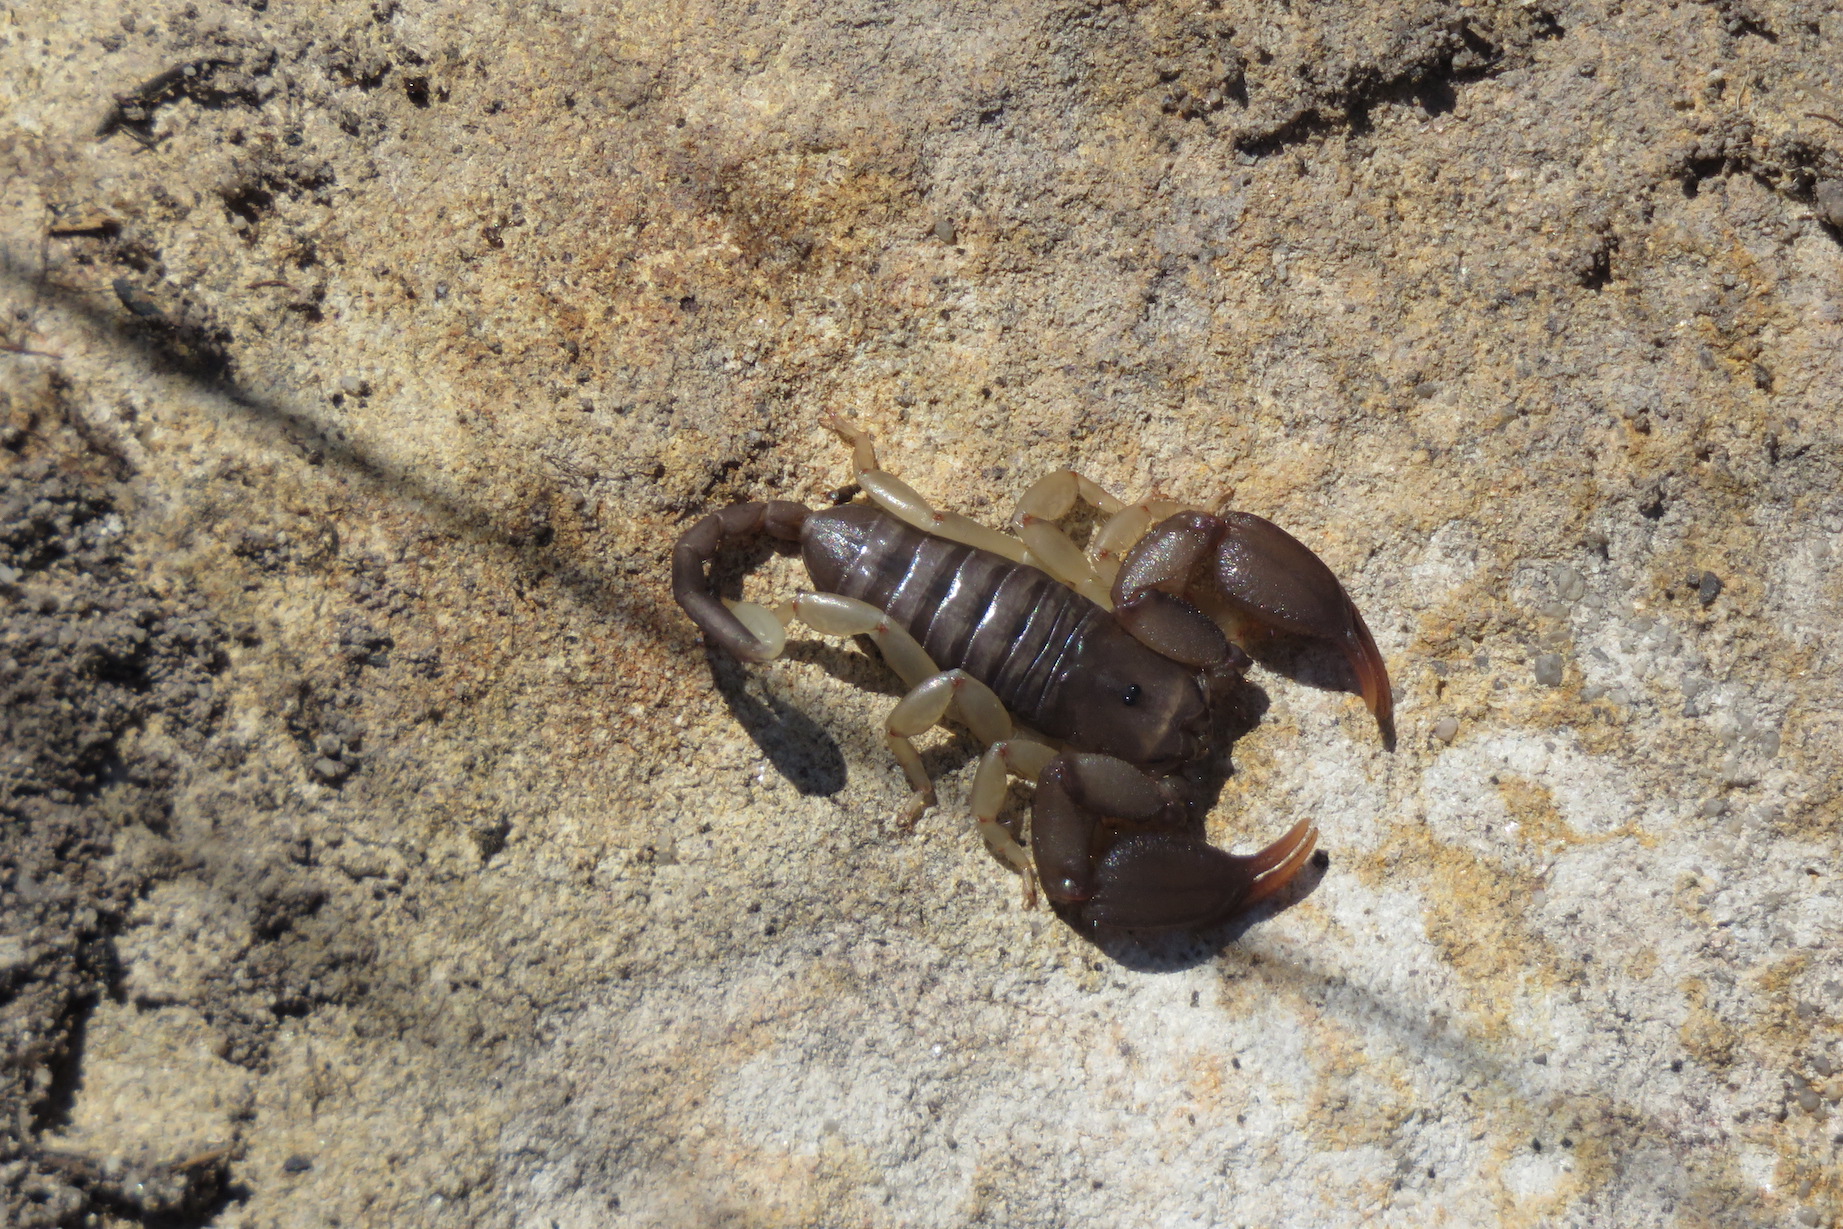 Flat Rock Scorpion, Isalo